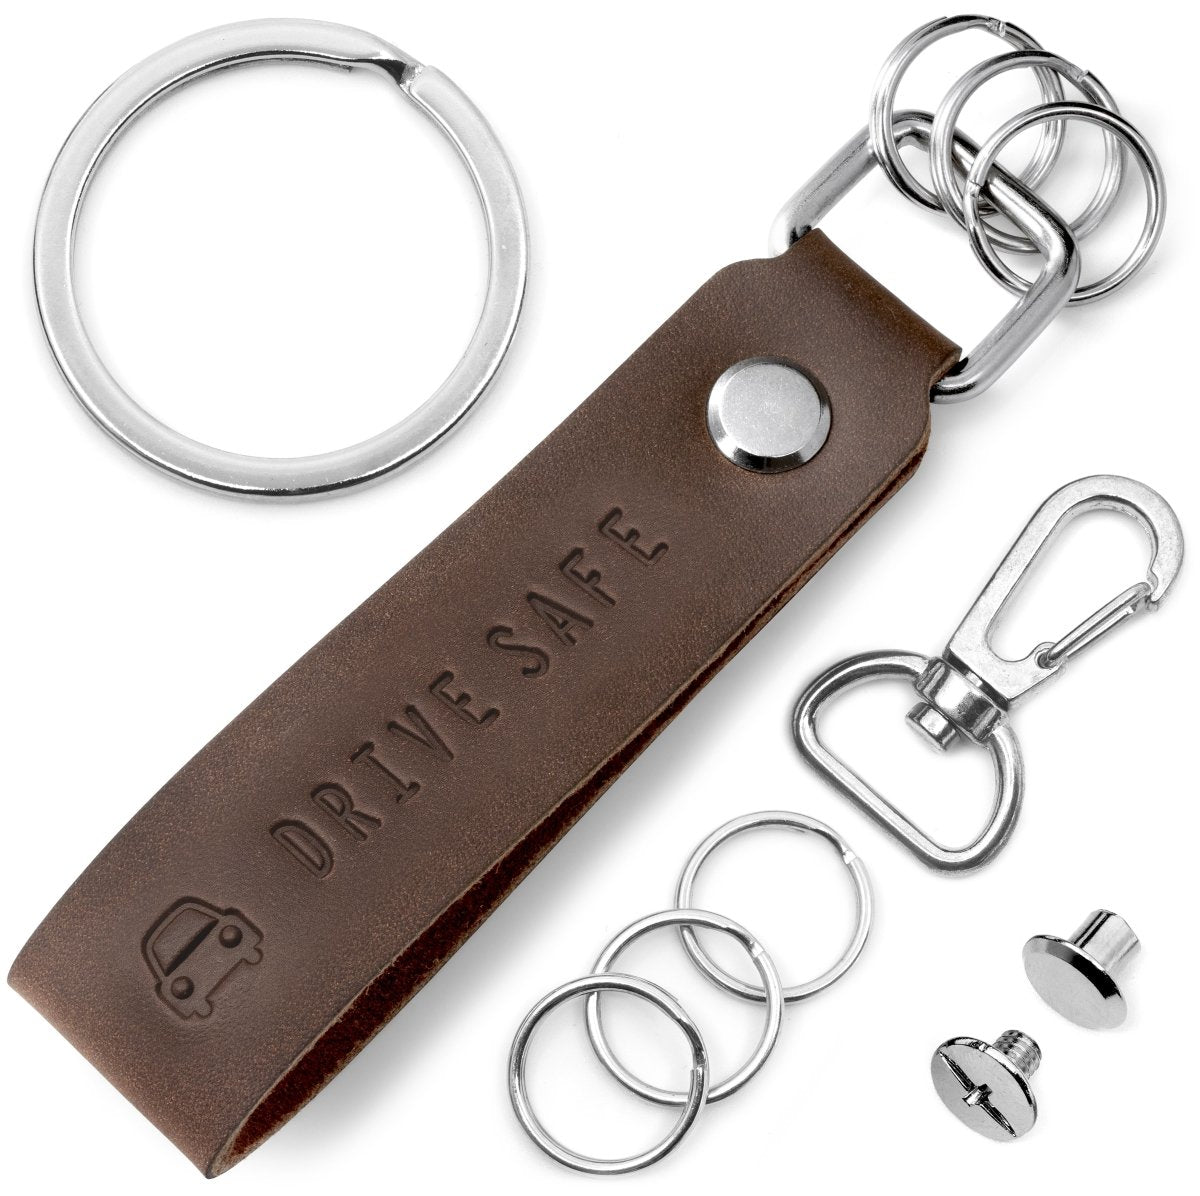 "Drive Safe" Leder-Schlüsselanhänger mit wechselbarem Schlüsselring - FABACH #farbe_braun